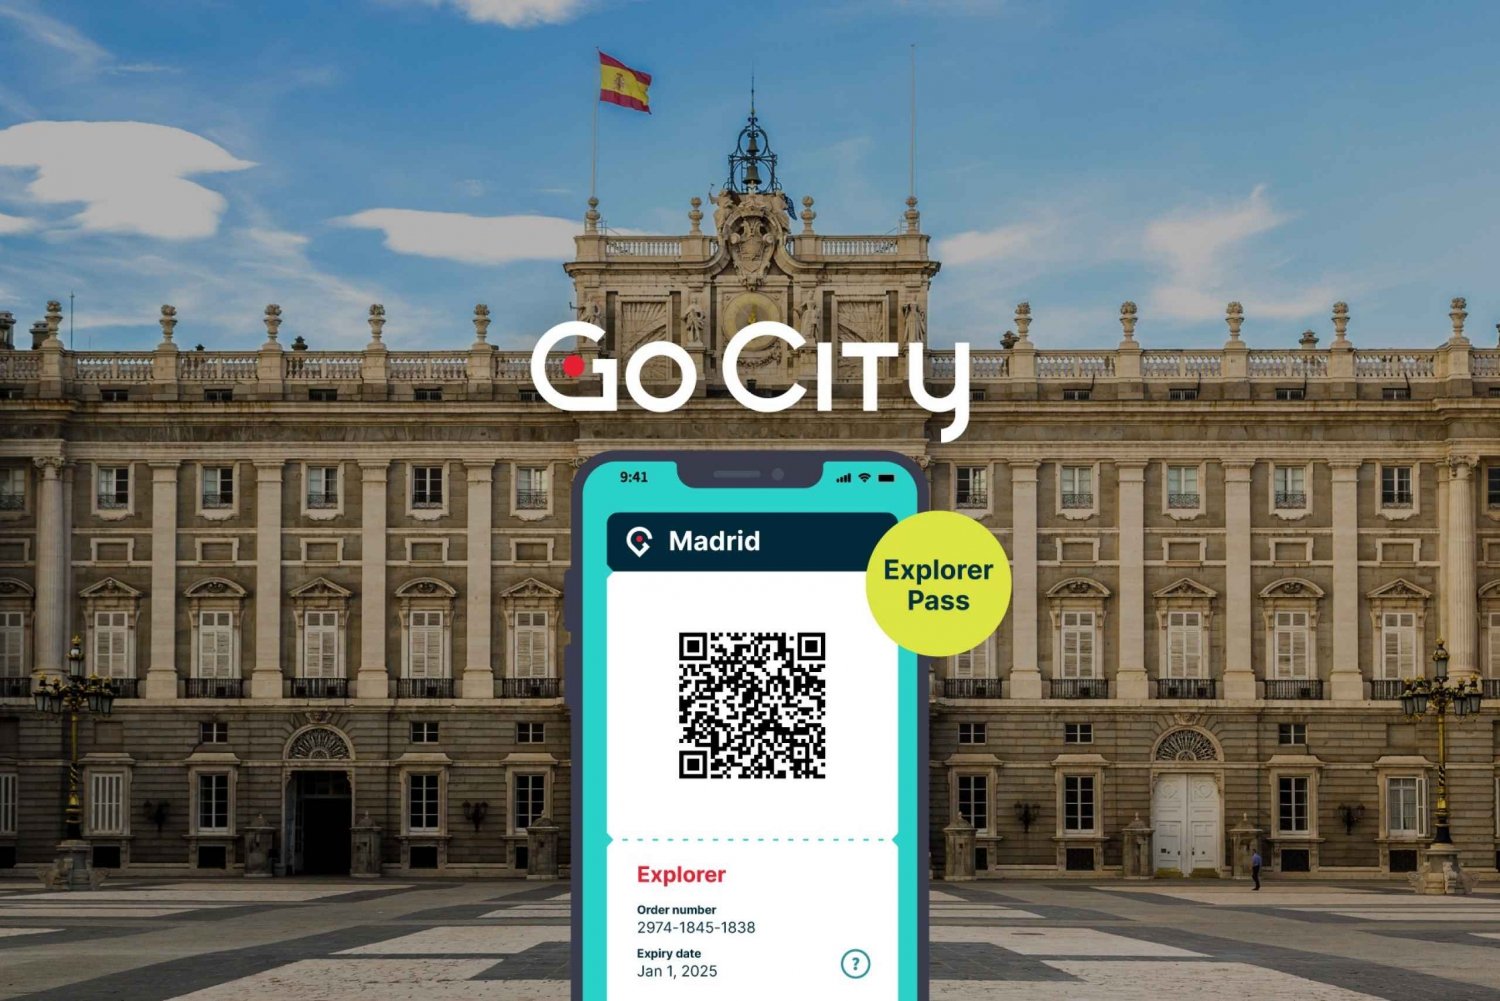 Madrid : Go City Explorer Pass - Choisissez de 3 à 7 attractions